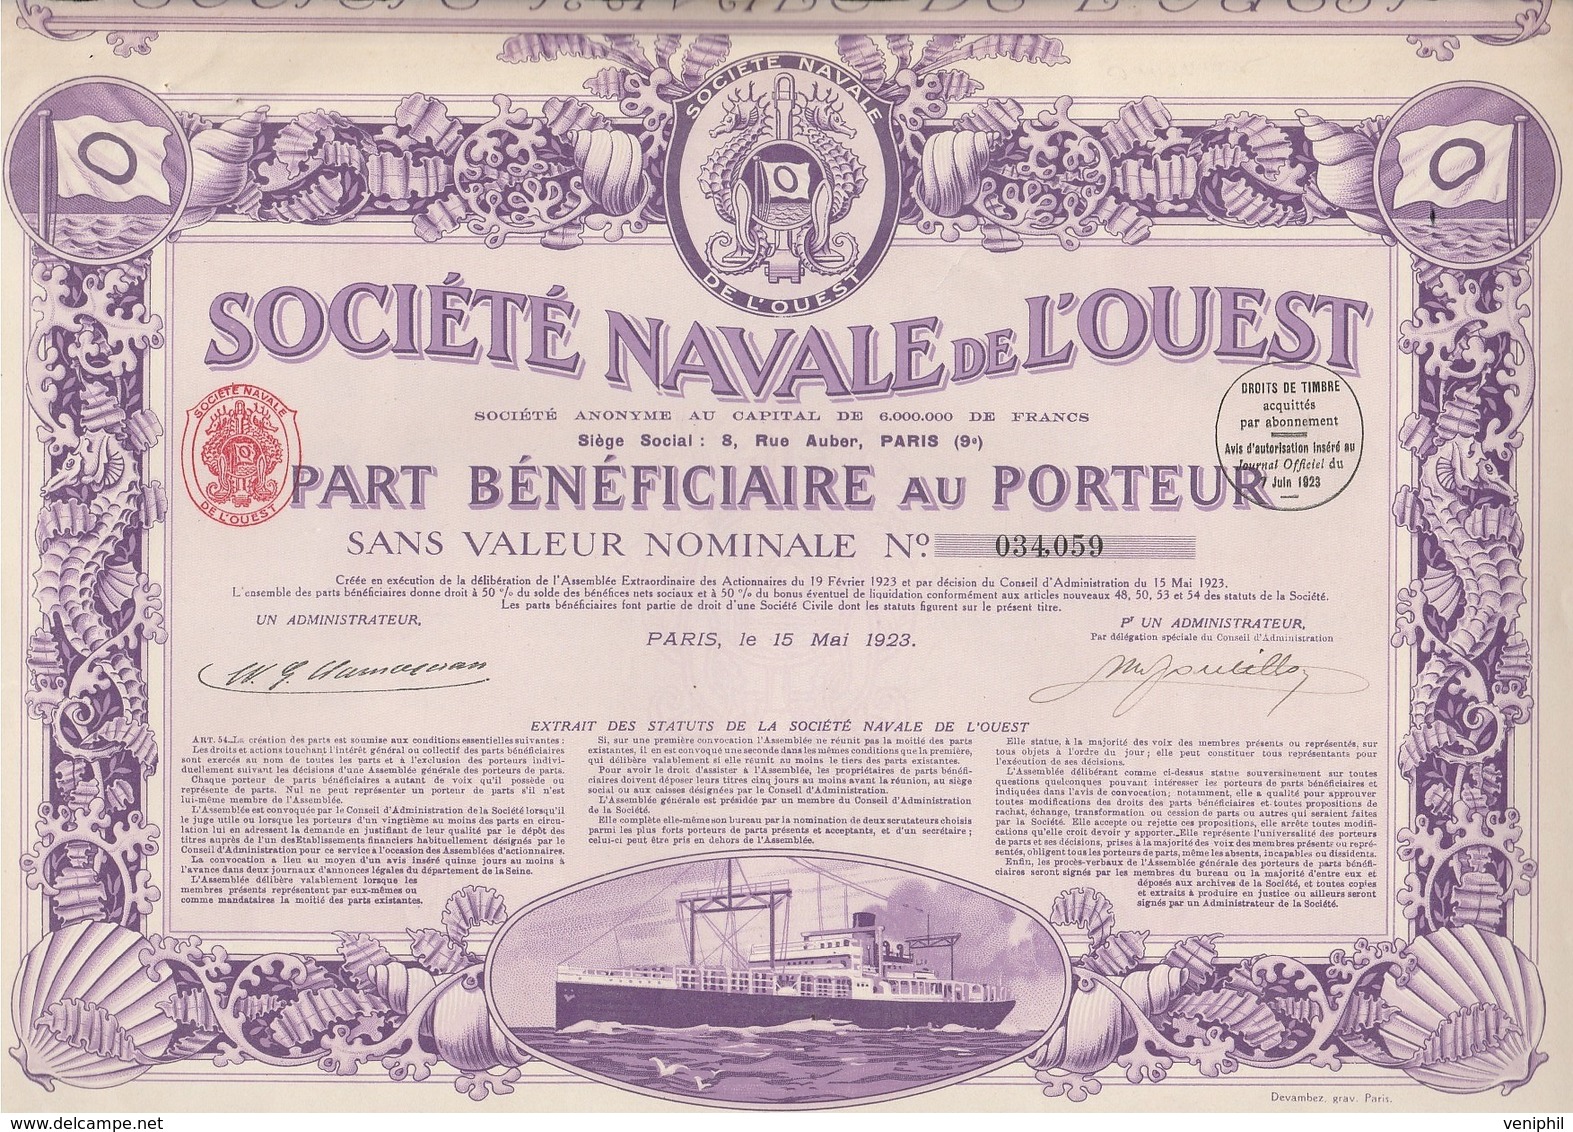 SOCIETE NAVALE DE L'OUEST -PART BENEFICIAIRE- ANNEE 1923 - COULEUR VIOLETTE - Scheepsverkeer